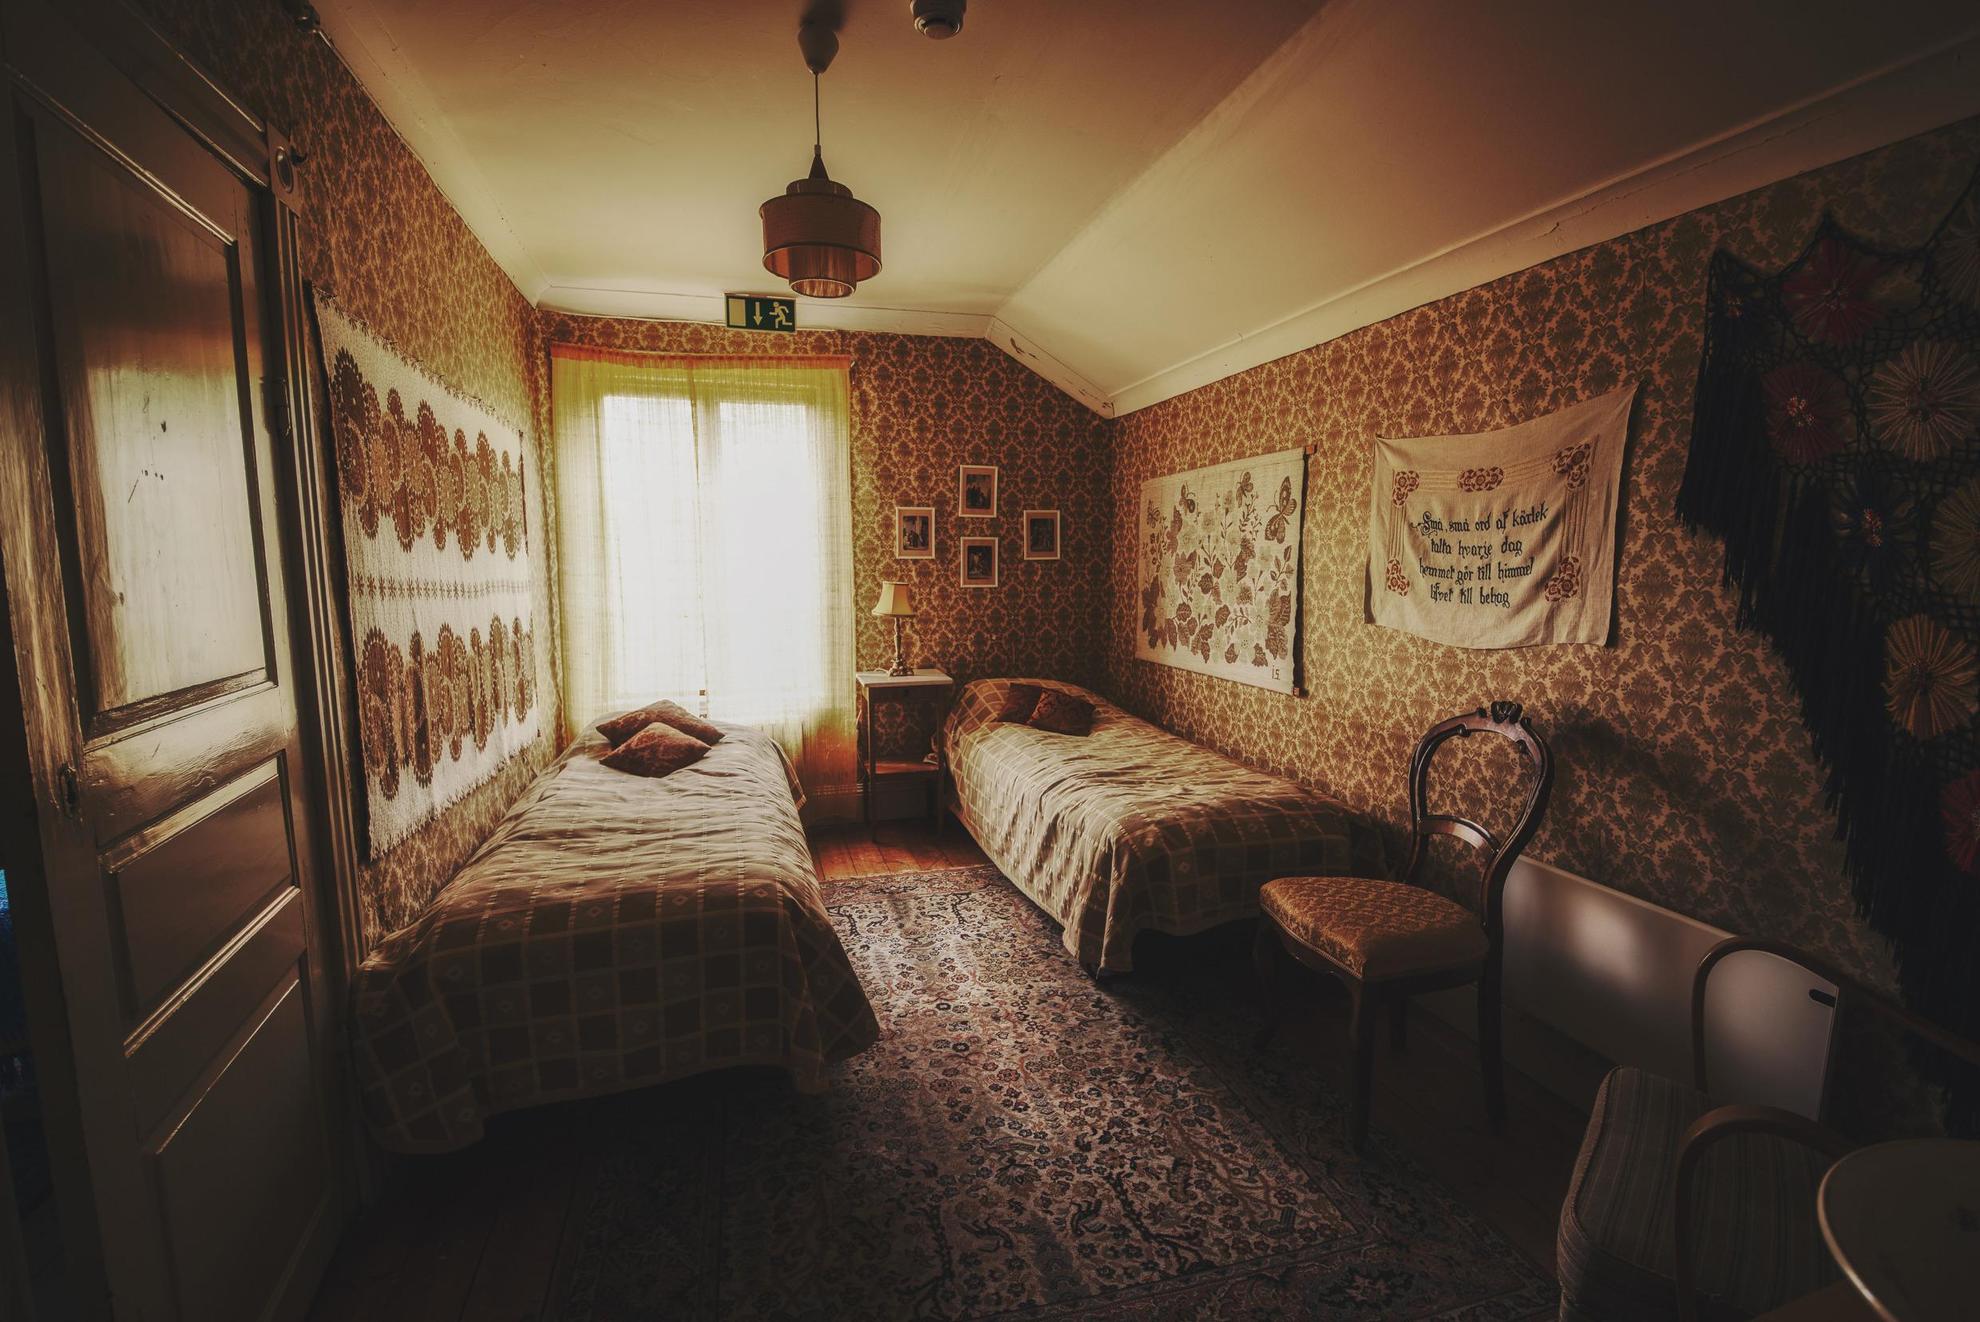 Een kamer met decoratief behang, schilderijen, een vloerkleed, een stoel en twee eenpersoonsbedden.